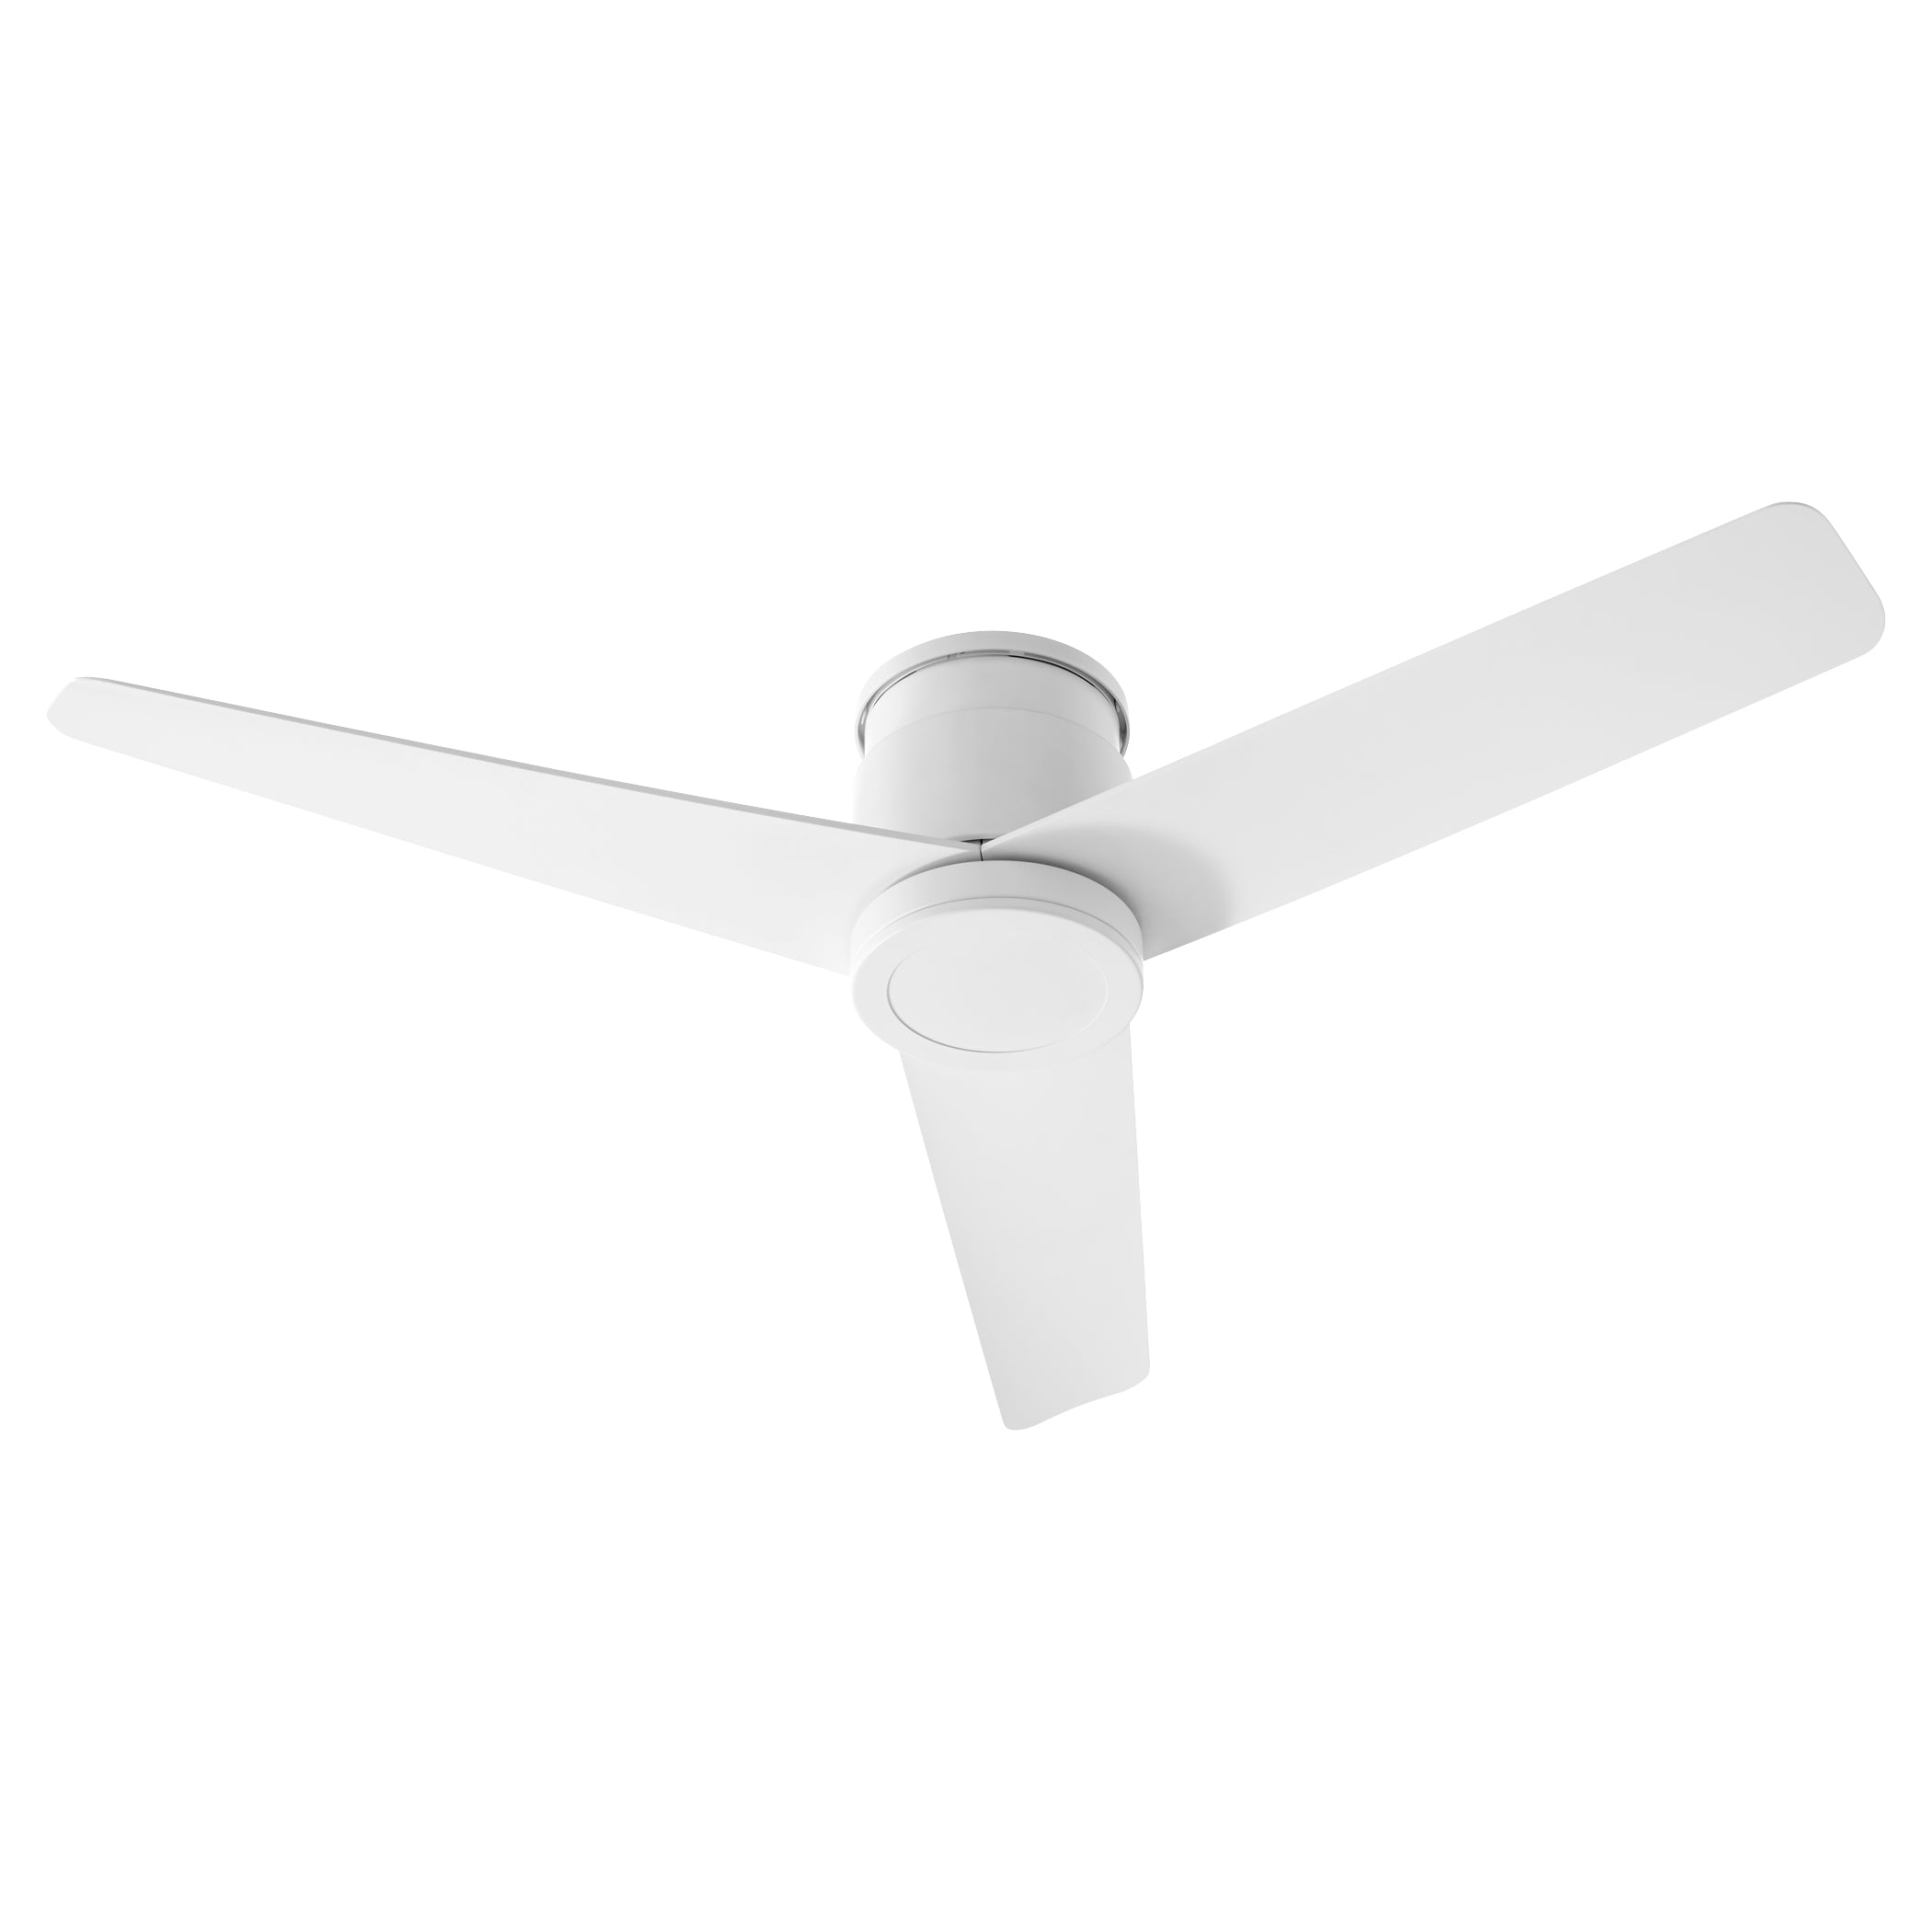 Oxygen Adora 3-111-6 Ceiling Fan - White